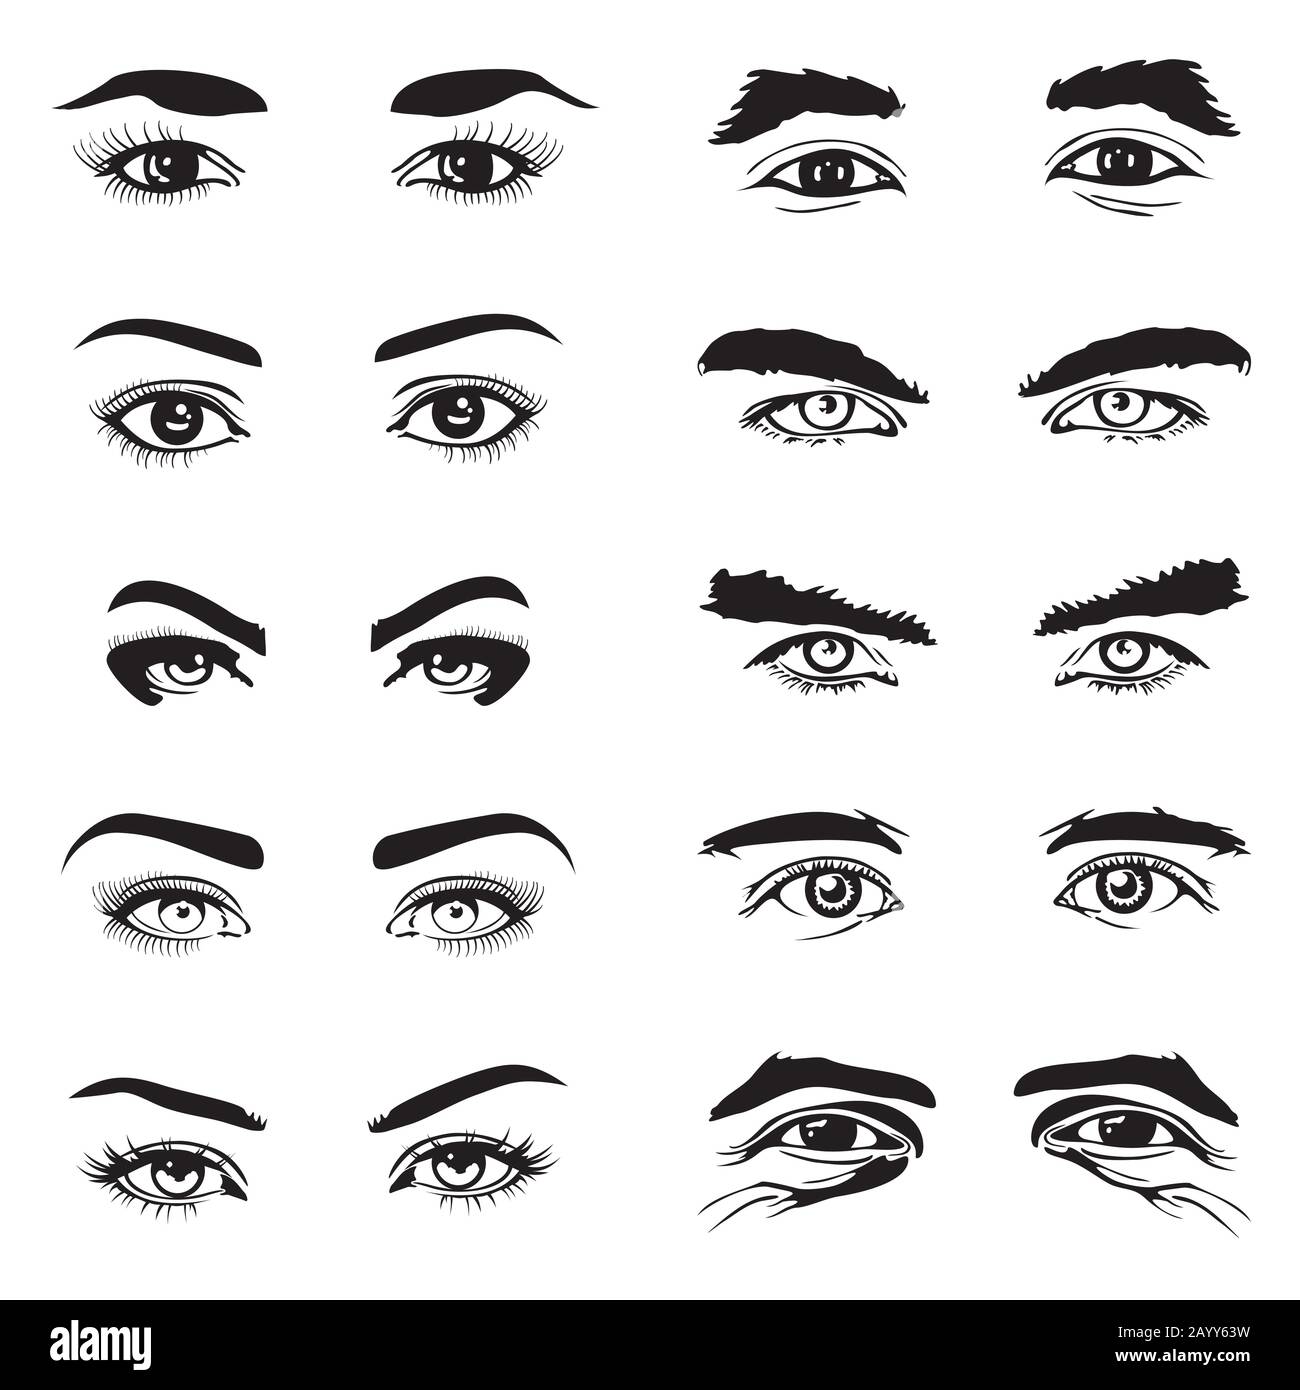 Männliche und weibliche Augen und Augenbrauen Vektorelemente. Menschlicher Augapfel und Darstellung Stock Vektor